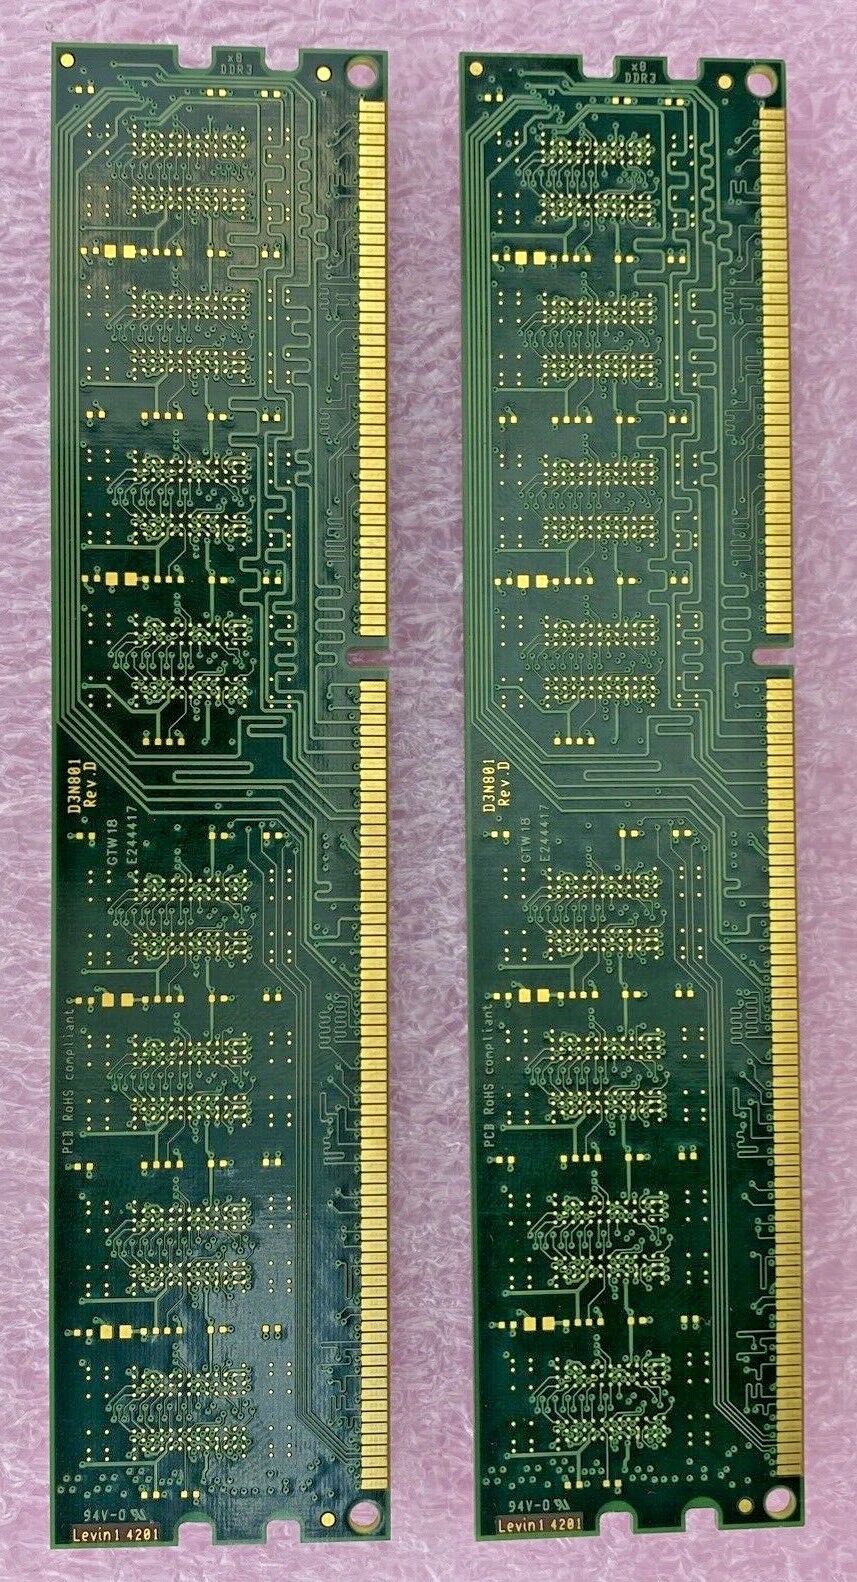 2x 2GB Crucial CT25664BA1339.C8F1MR PC3-10600 1333Mhz DDR3